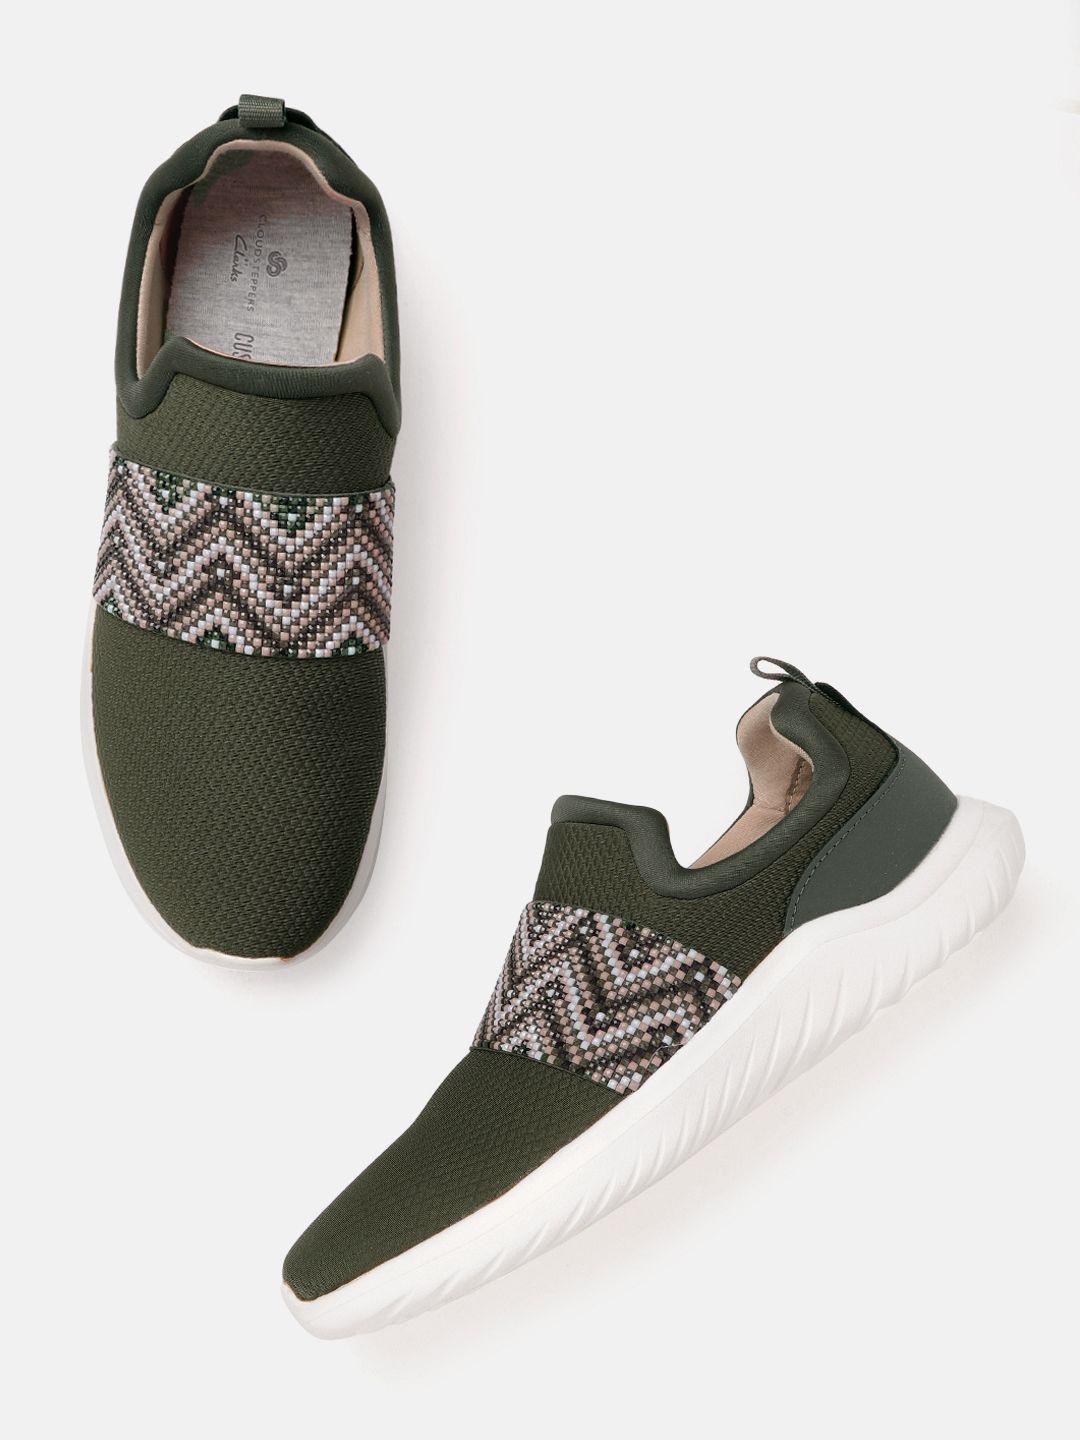 clarks women olive green & white woven design slip-on sneakers